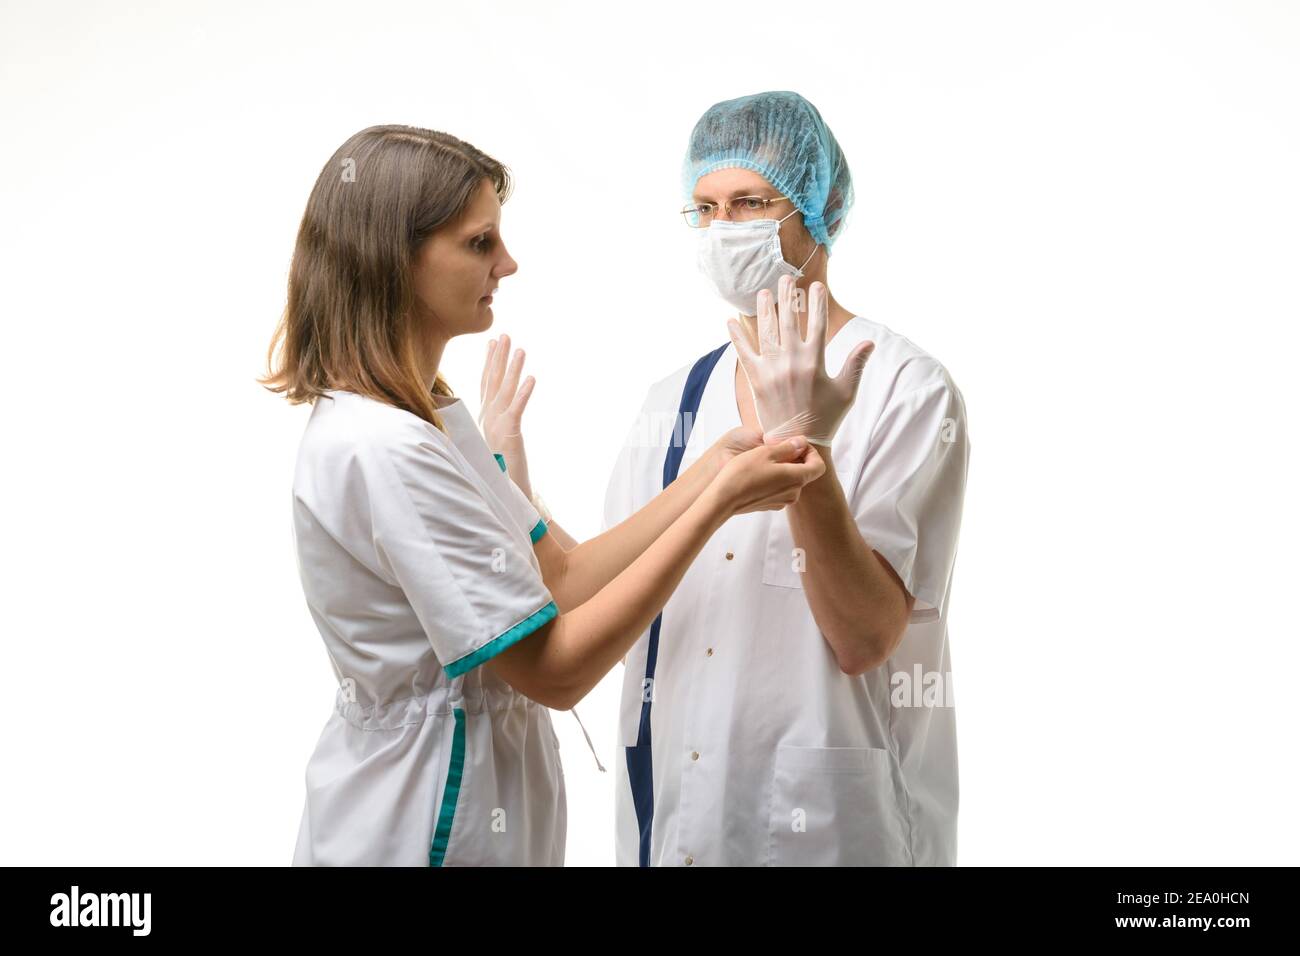 Eine Krankenschwester legt sterile medizinische Handschuhe auf die Hände des Chirurgen Stockfoto